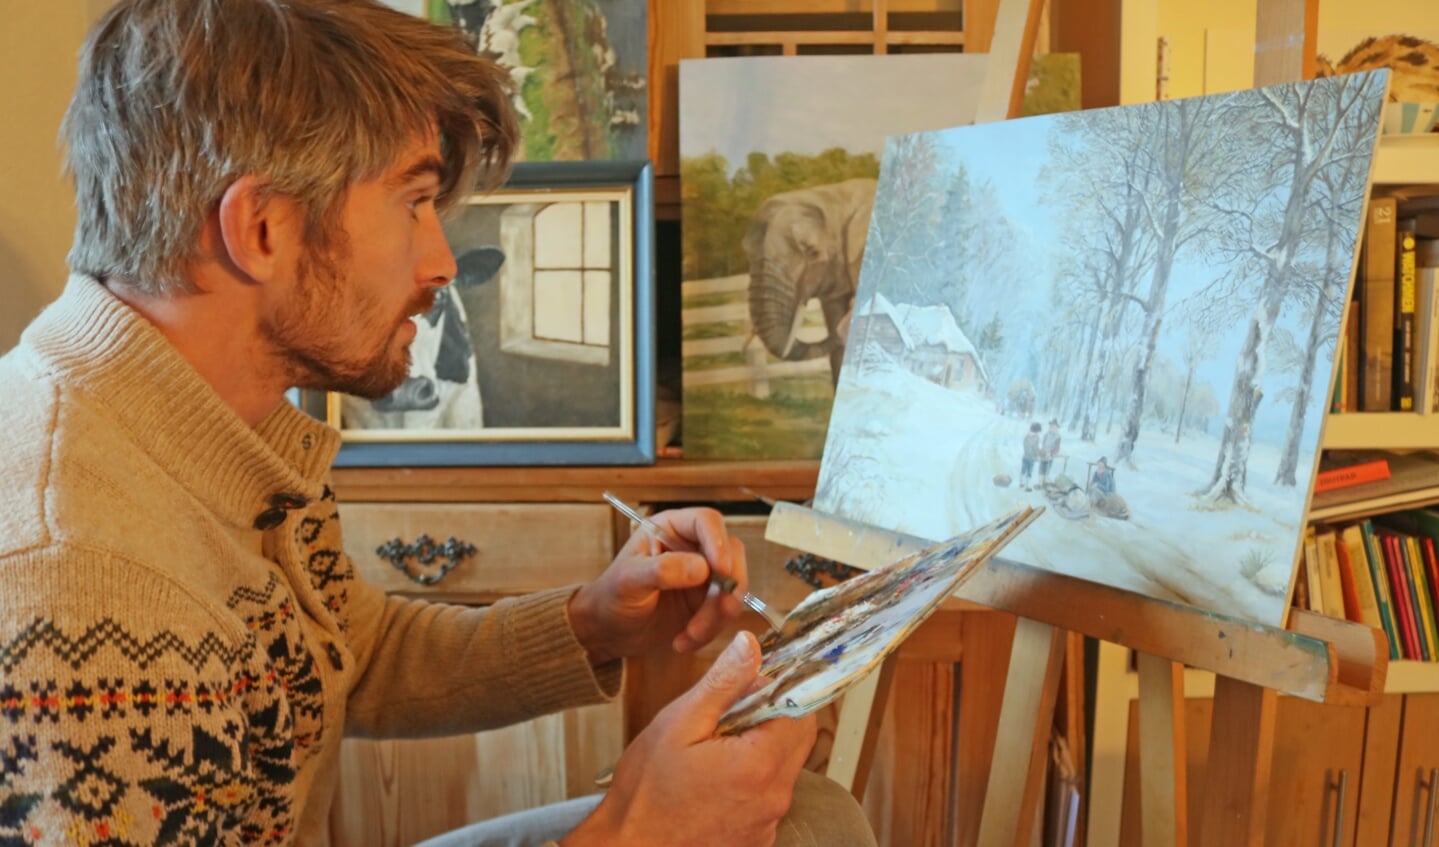 Ysbrand aan het schilderen in zijn woonkamer, dit is een replica die hij maakt van een winters tafereel van landschapsschilder Cornelis Koekkoek.